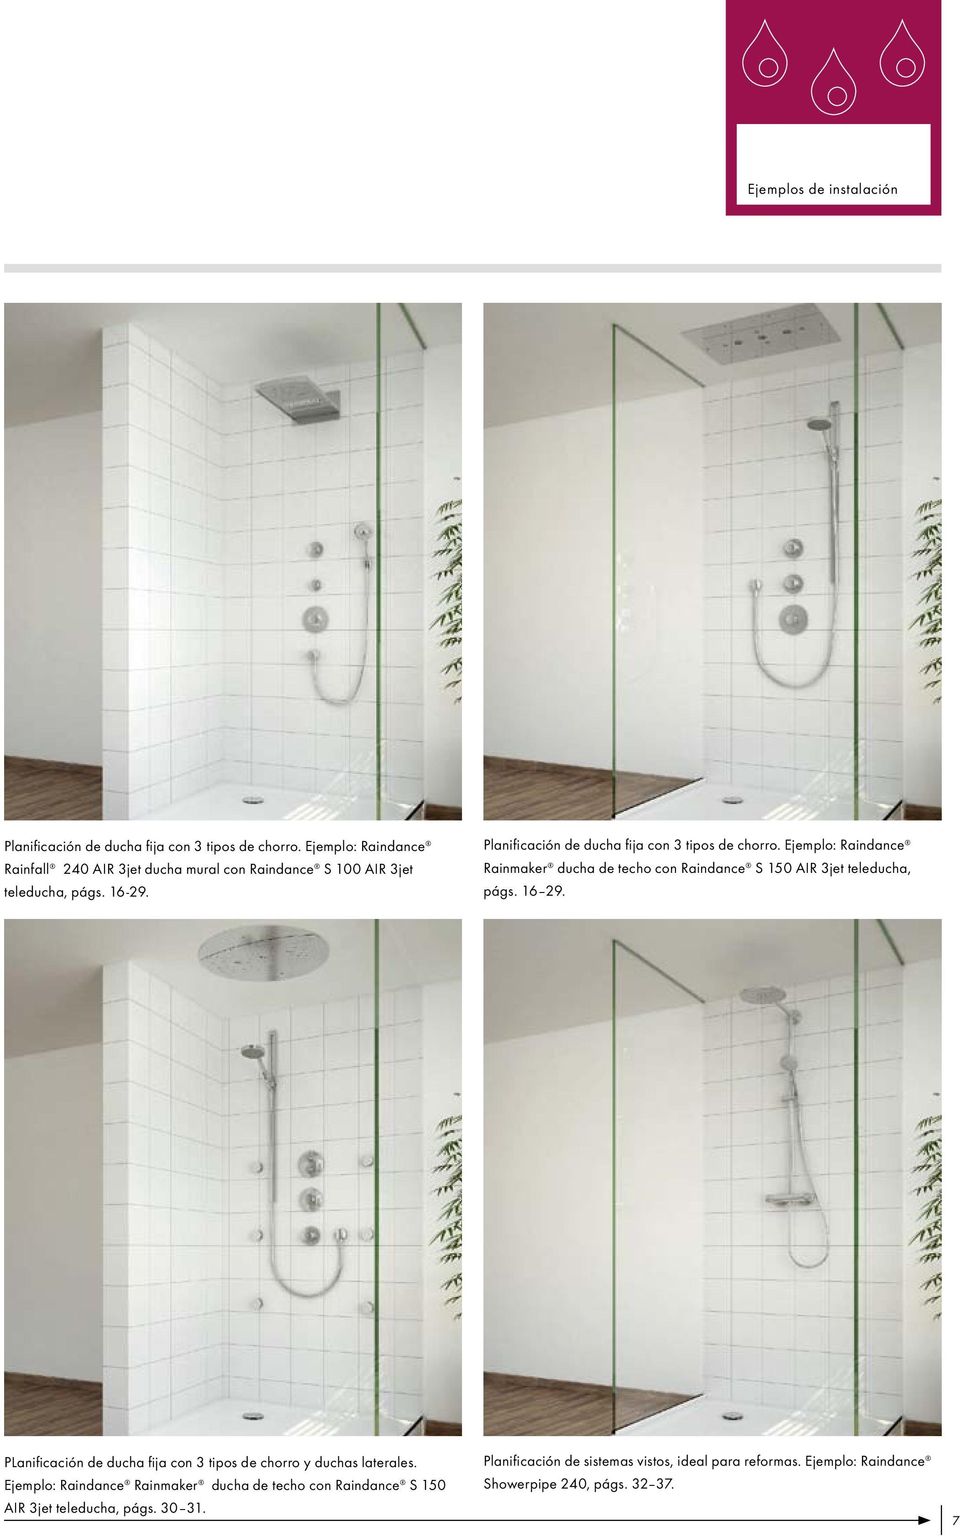 Planificación de ducha fija con 3 tipos de chorro. Ejemplo: Raindance Rainmaker ducha de techo con Raindance S 150 AIR 3jet teleducha, págs. 16 29.